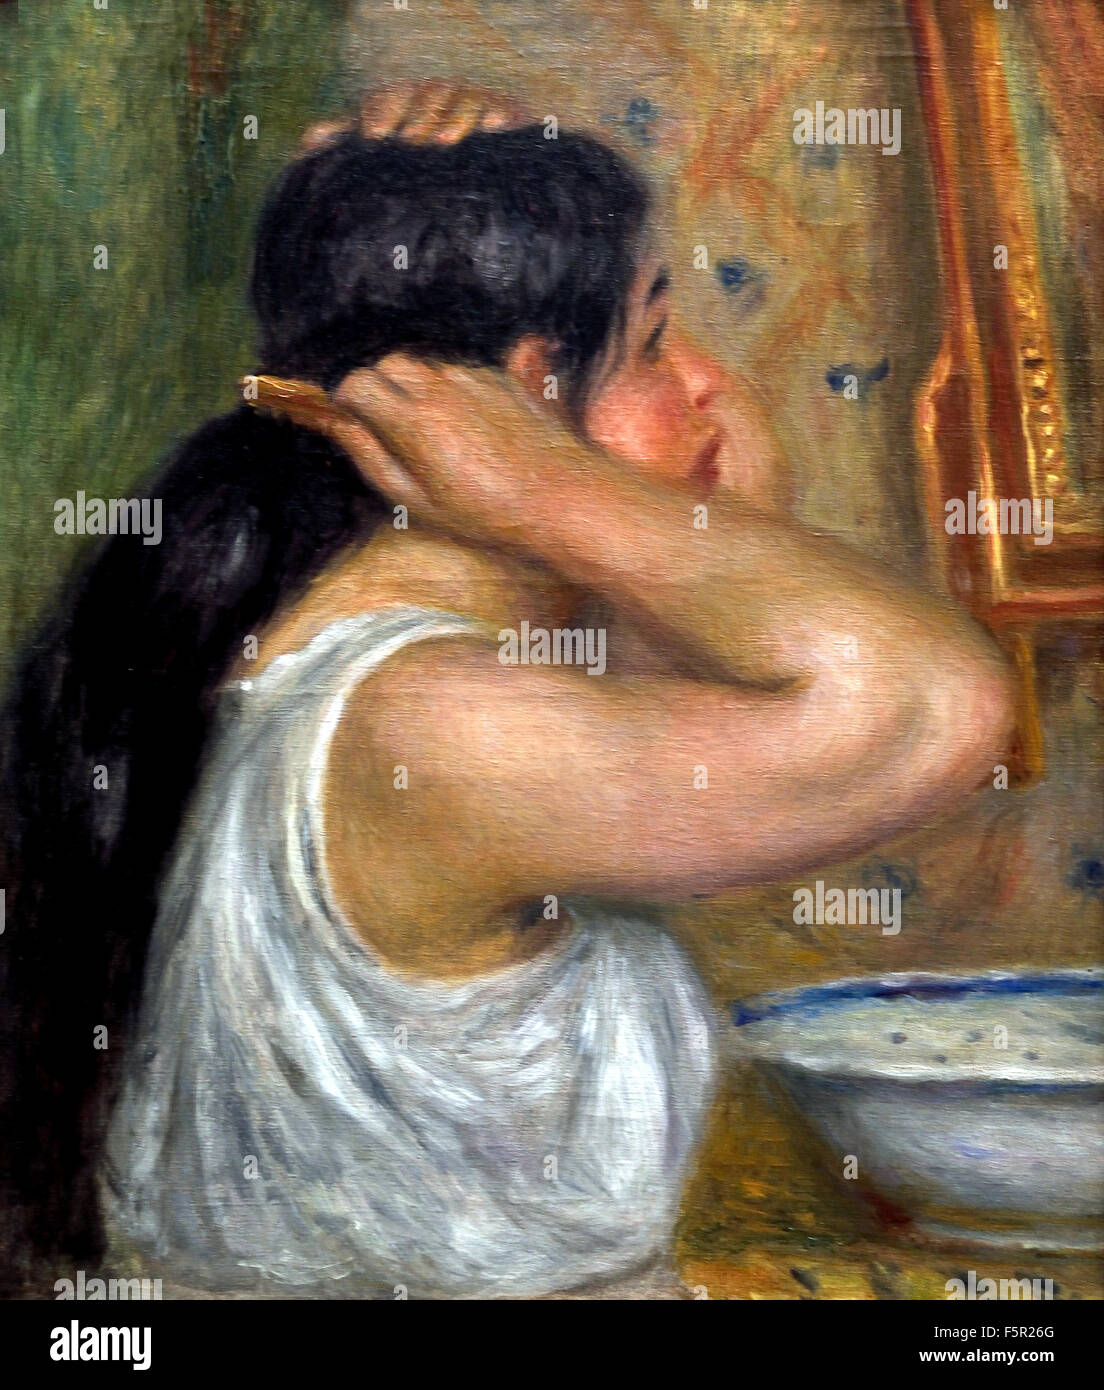 La Toilette: Femme Se Peignant - Toilette: Frau malt 1907-1908 Pierre Auguste Renoir 1841-1919 Französisch impressionistischen Frankreich Stockfoto